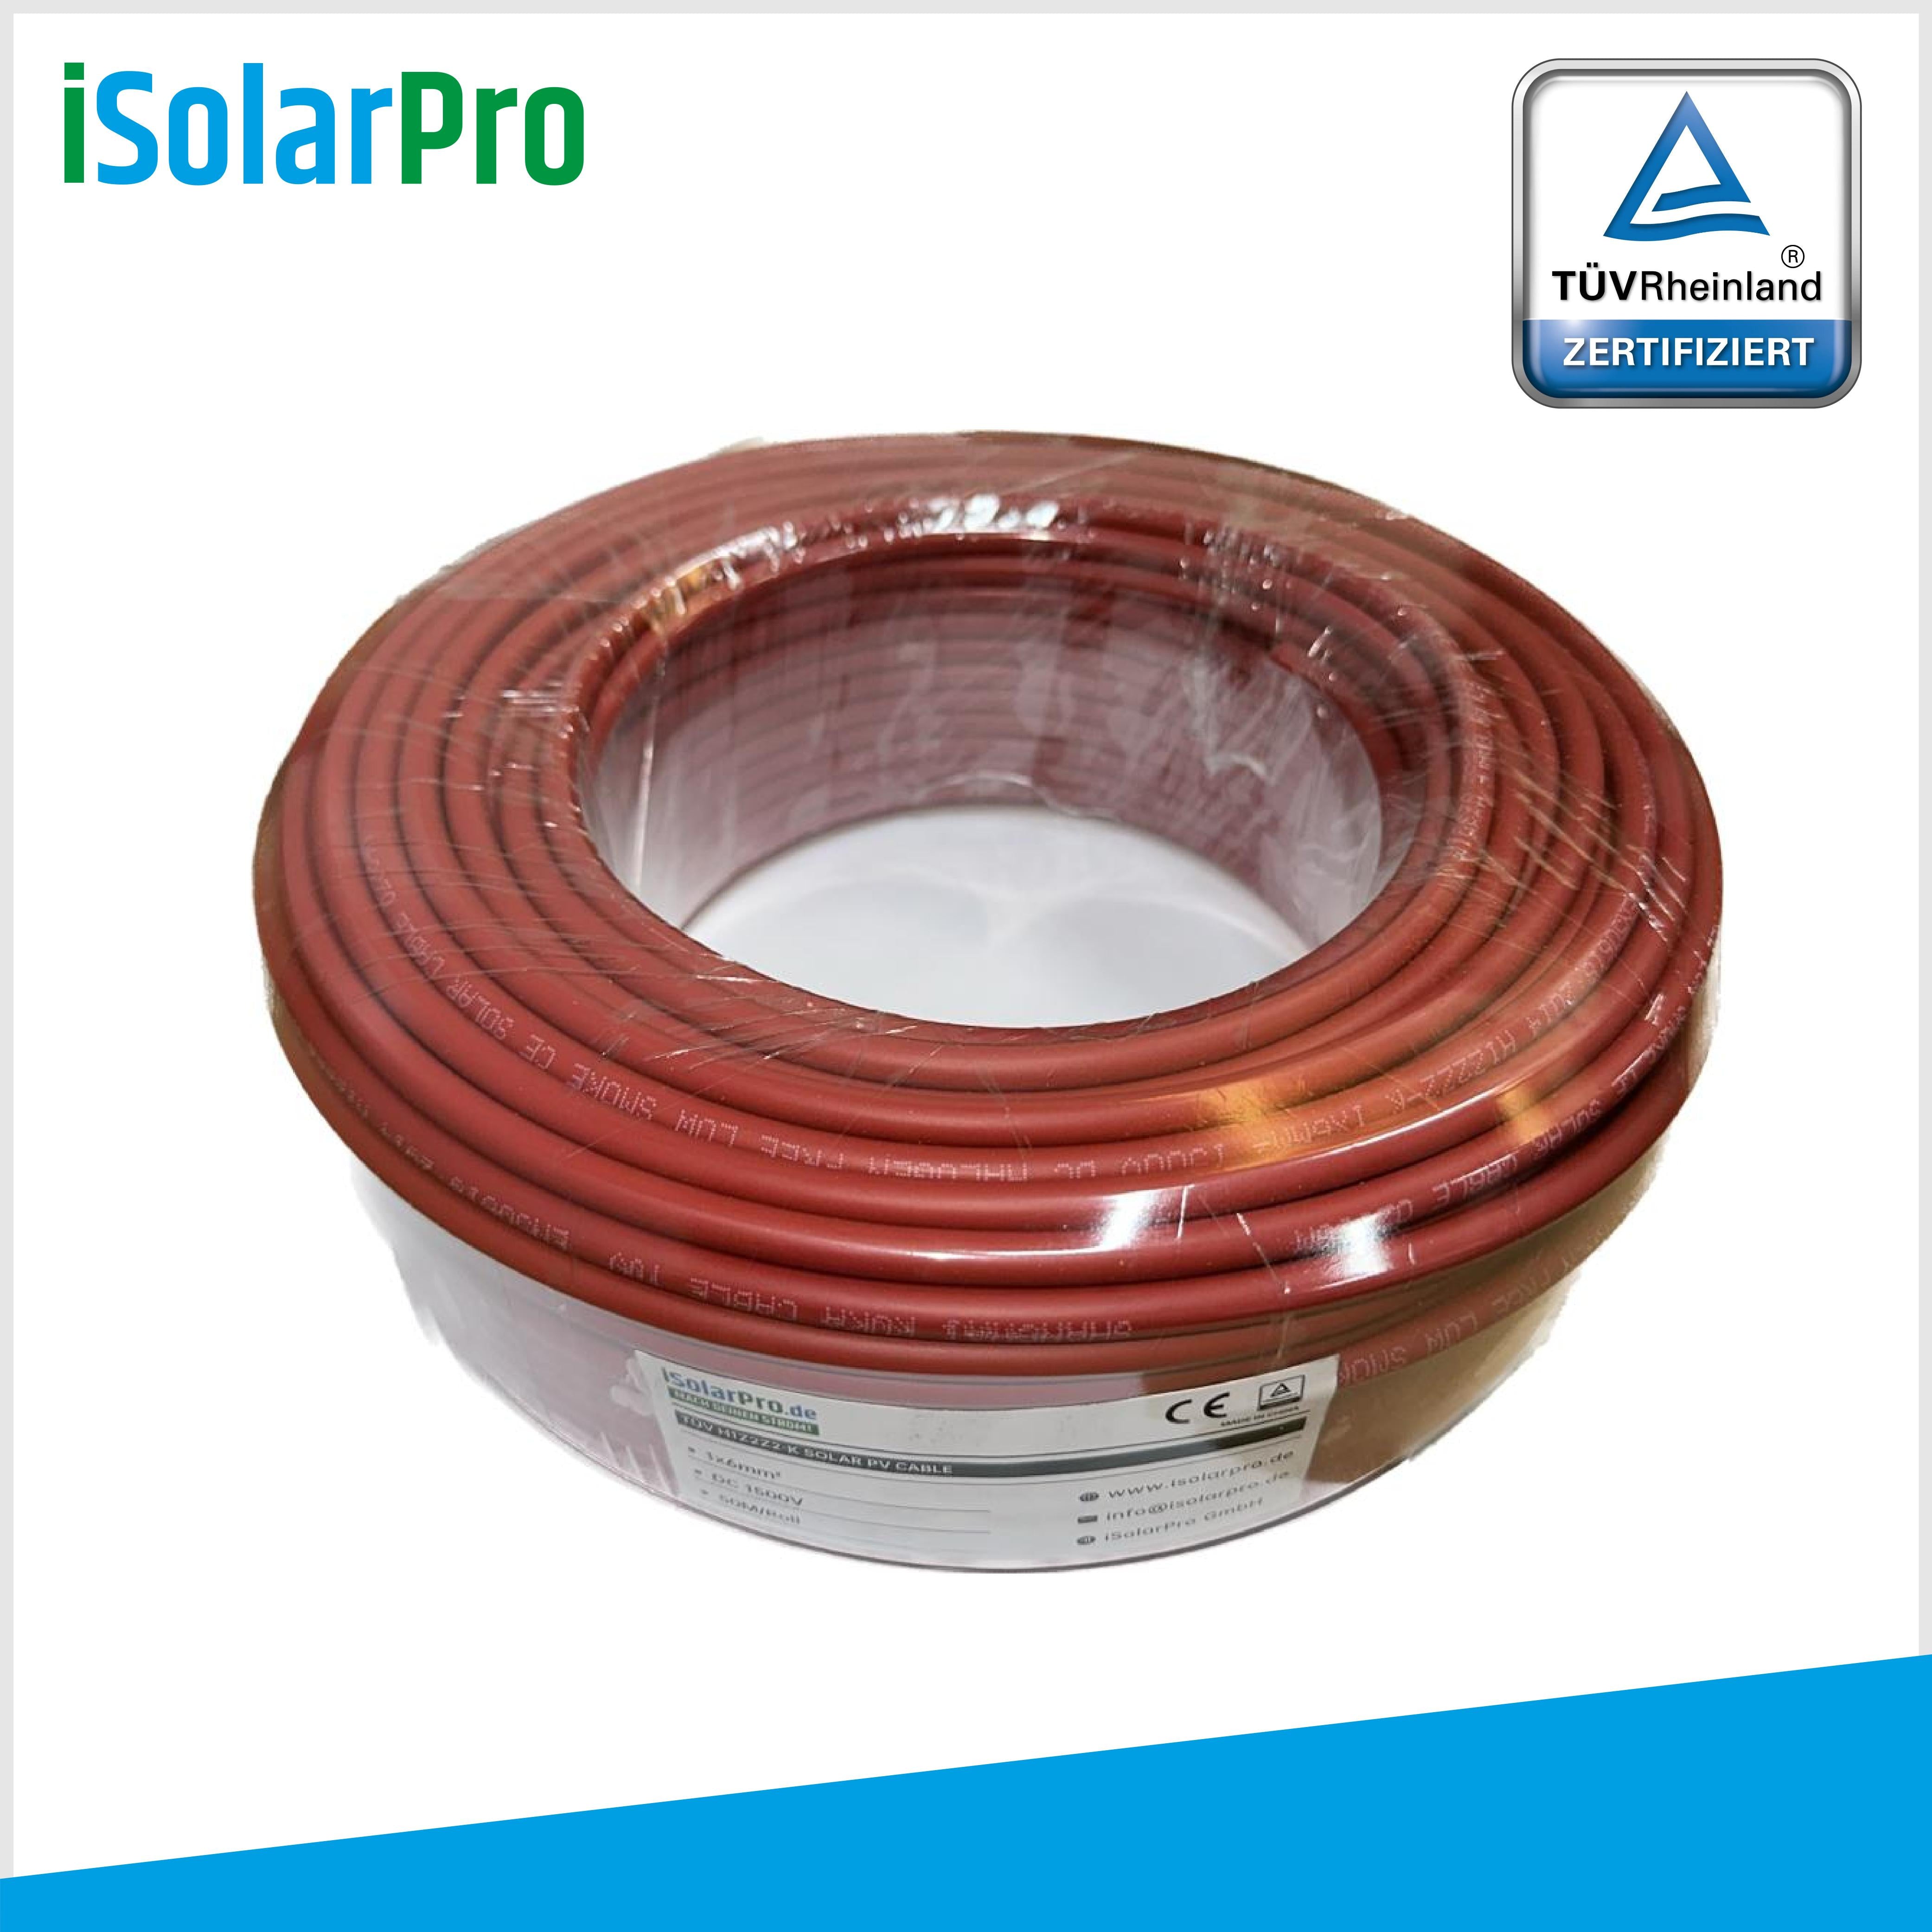 50m Solarkabel 6 mm² Photovoltaik Kabel für PV Anlagen rot